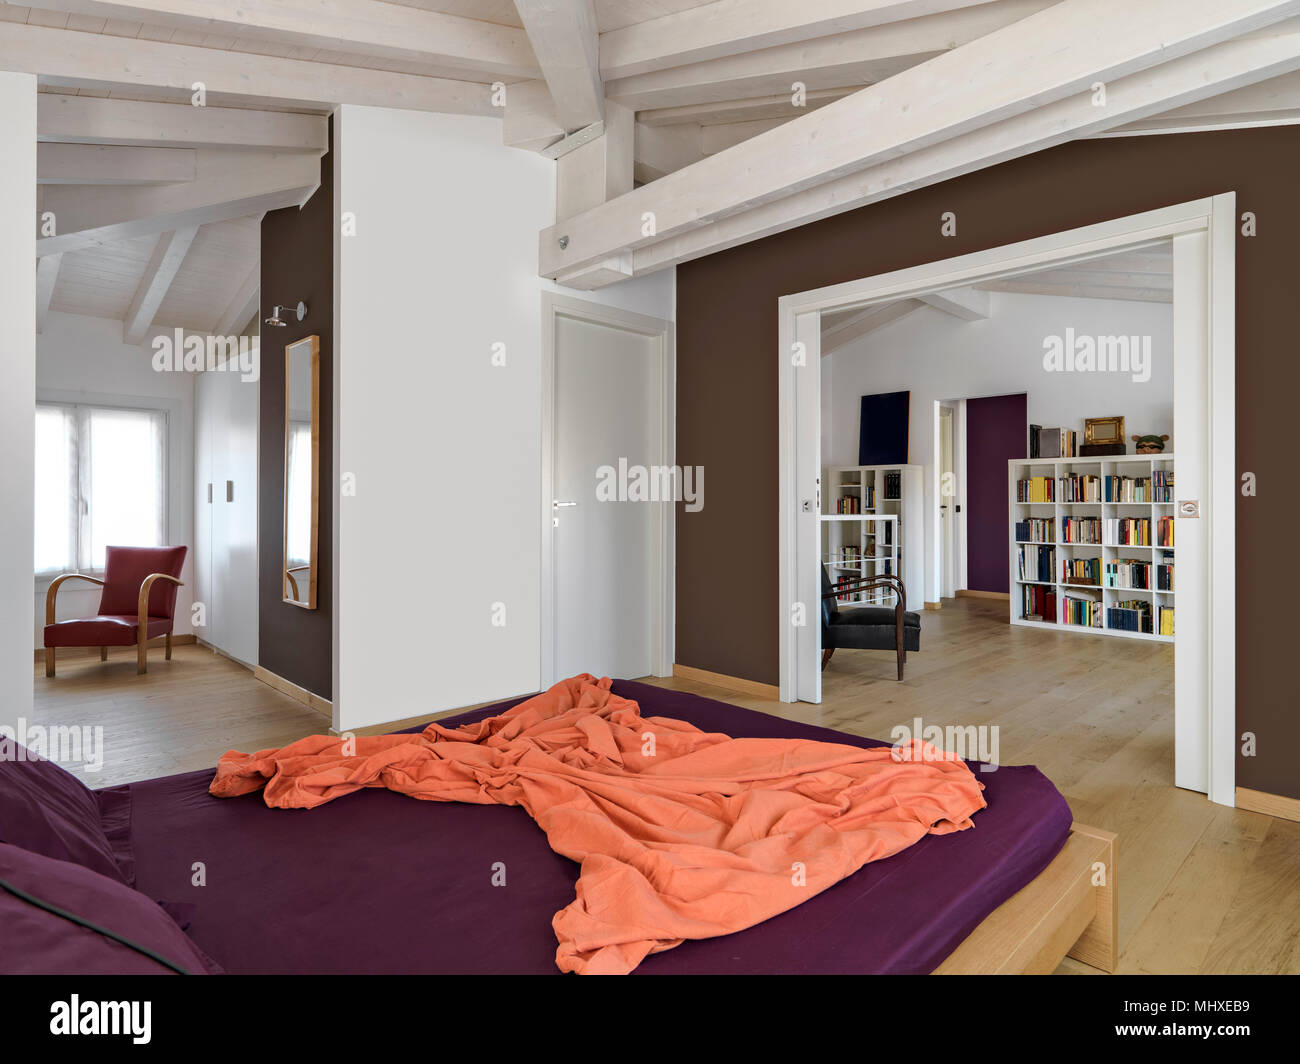 Los Interiores De Disparos De Un Moderno Dormitorio En La Buhardilla Habitacion Con Vestidor Y Piso De Madera Fotografia De Stock Alamy